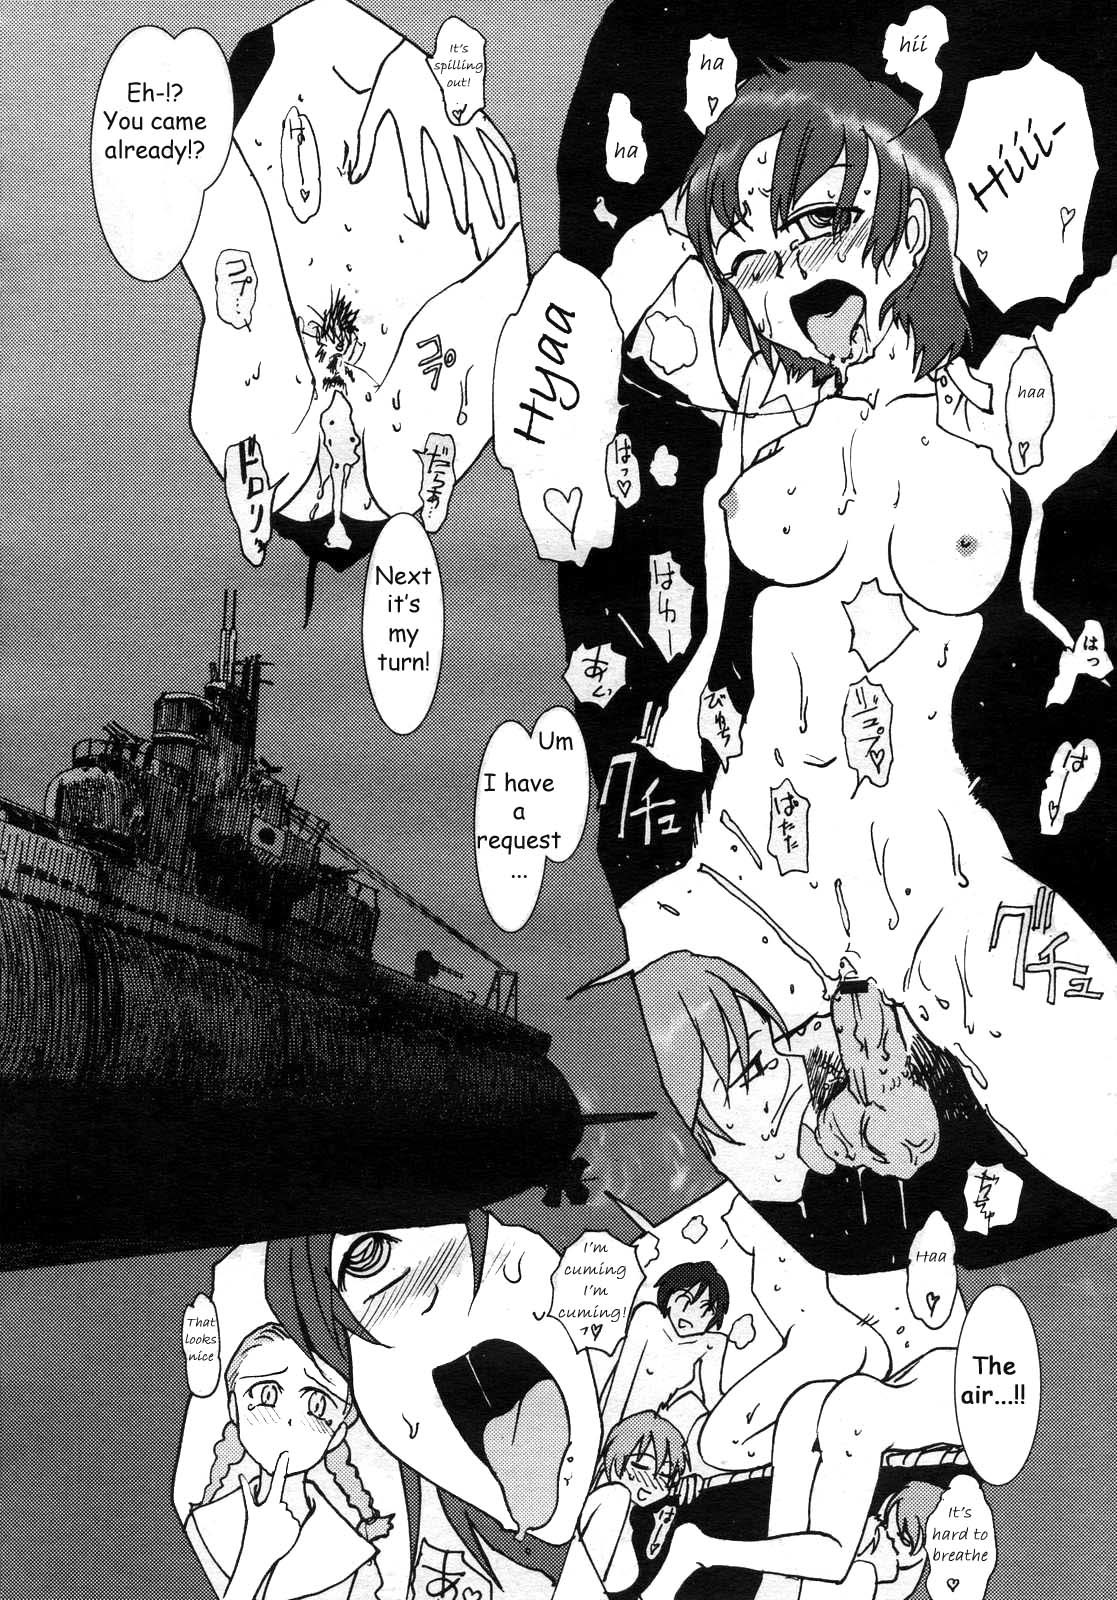 Mitsumei a.k.a. I-404 17 hentai manga